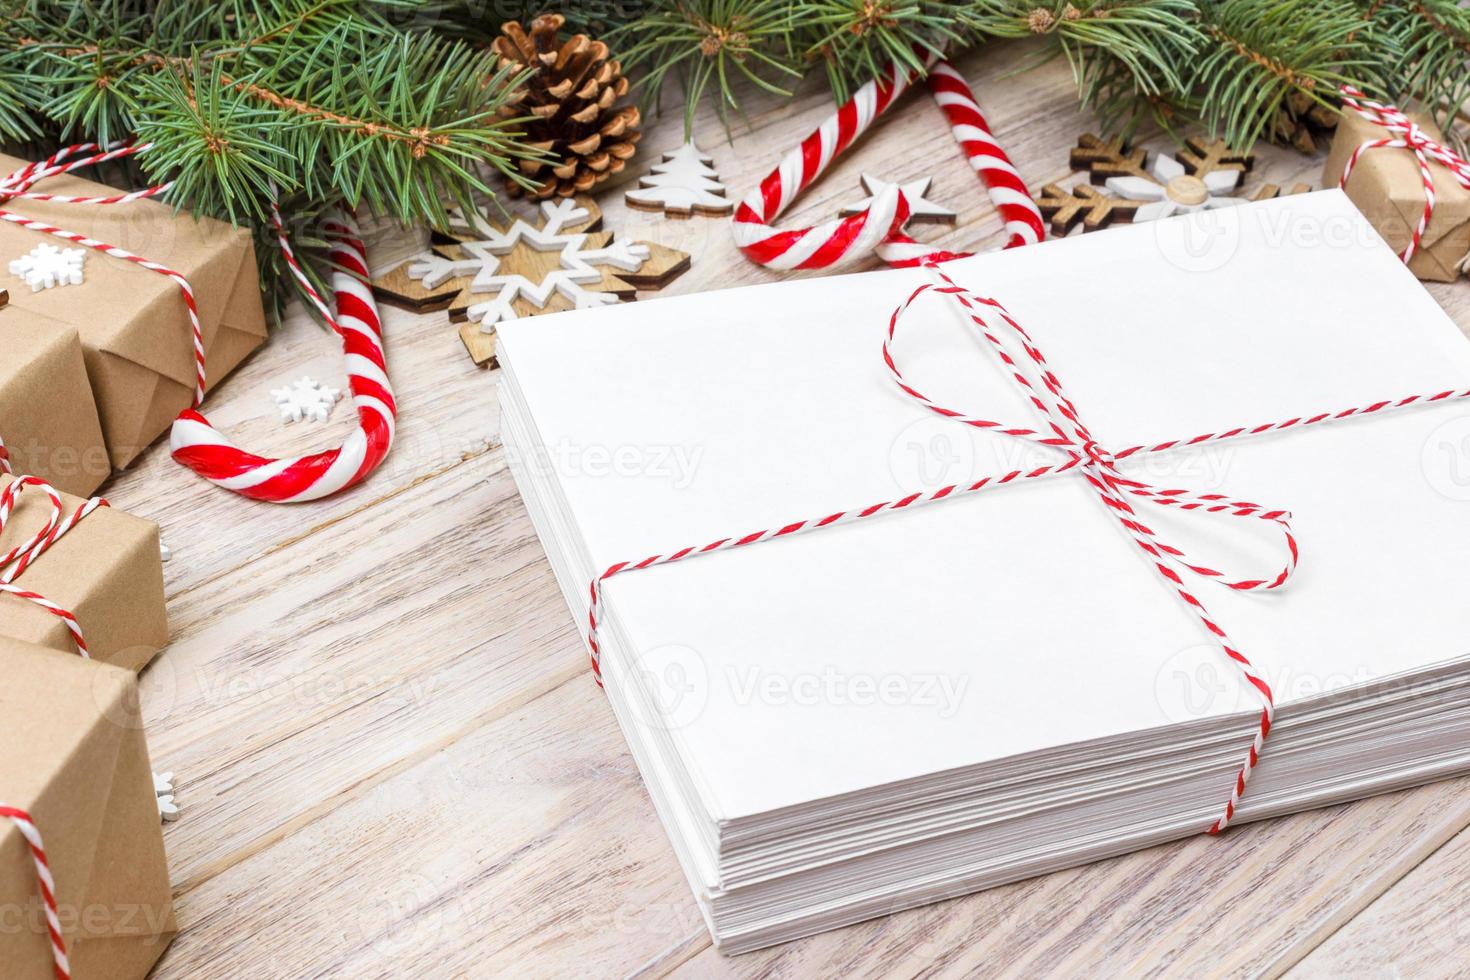 paket i kuvert med gran grenar och jul dekoration på en trä- bakgrund foto